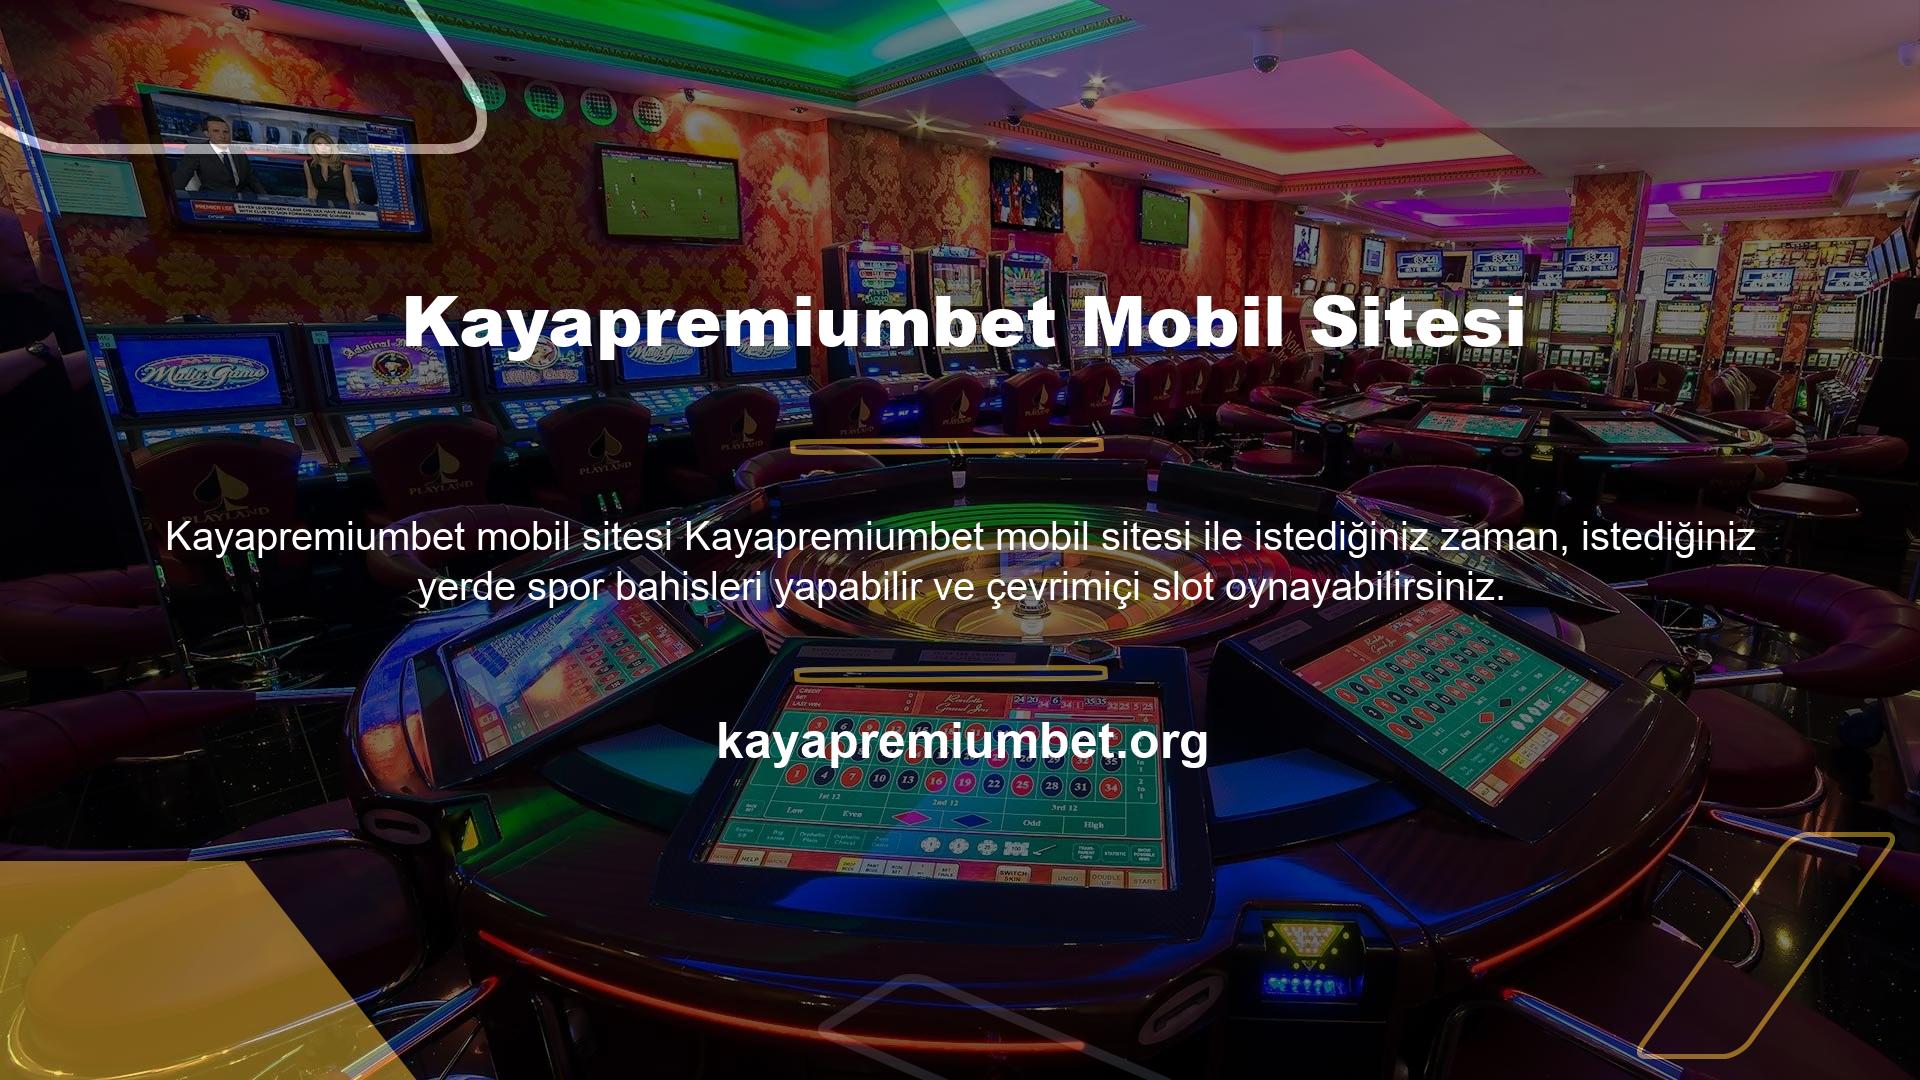 Kayapremiumbet, çevrimiçi Casino ve oyun platformlarının kullanıcılarına oyun ve Casino özellikleri sağlar